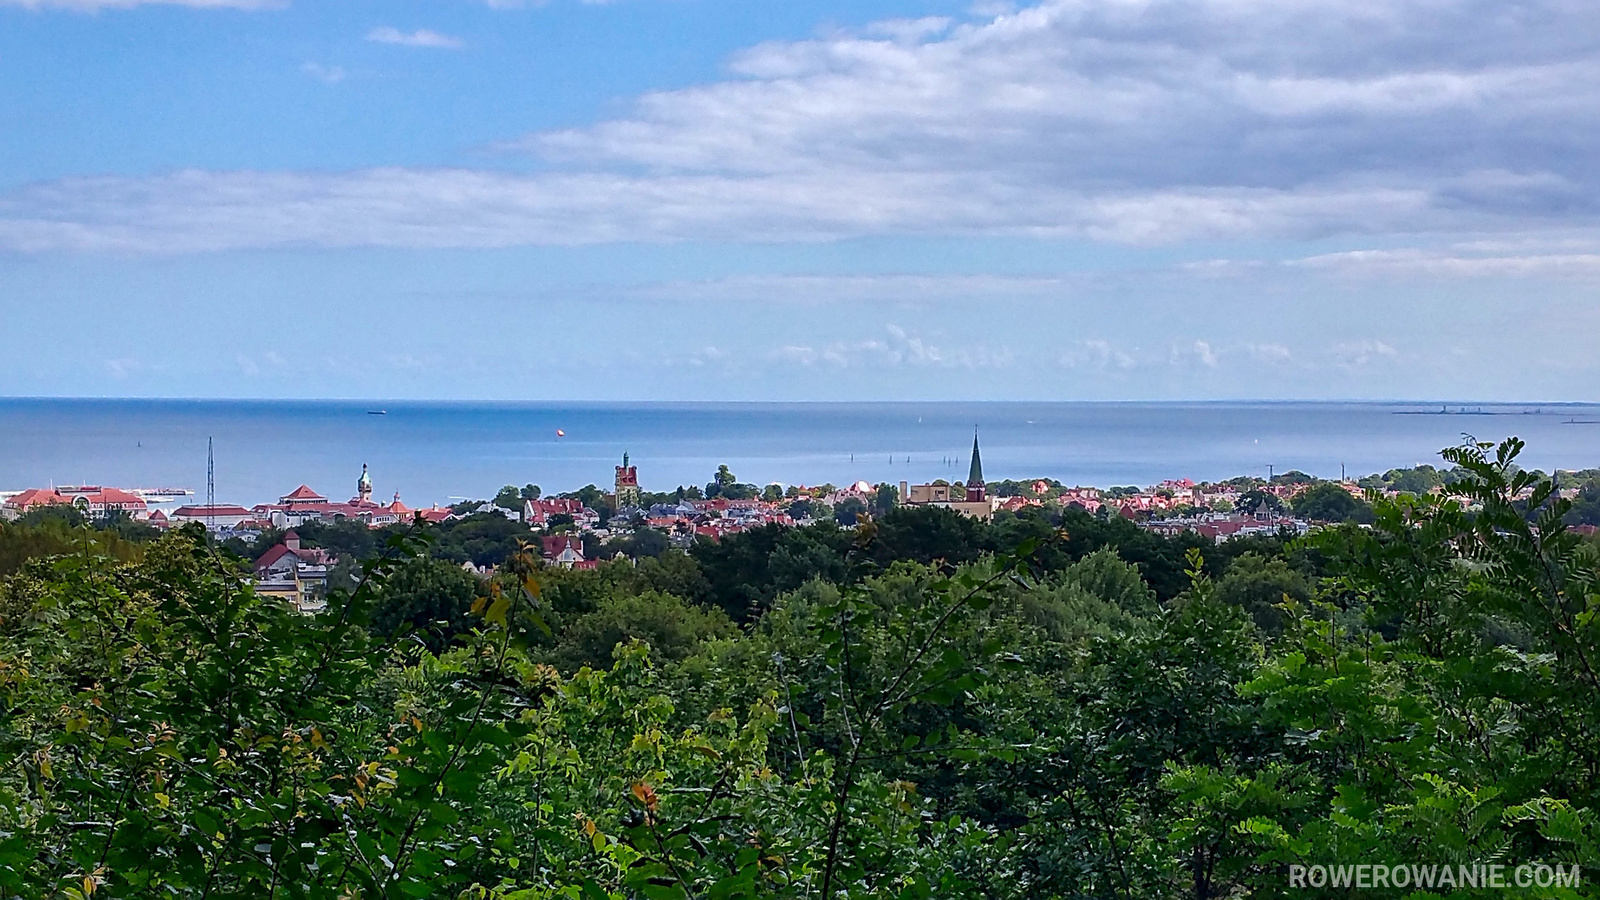 Widok na Morze Bałtyckie, wystająca wieża Katedry Oliwskiej - będziemy tam przejeżdżać.